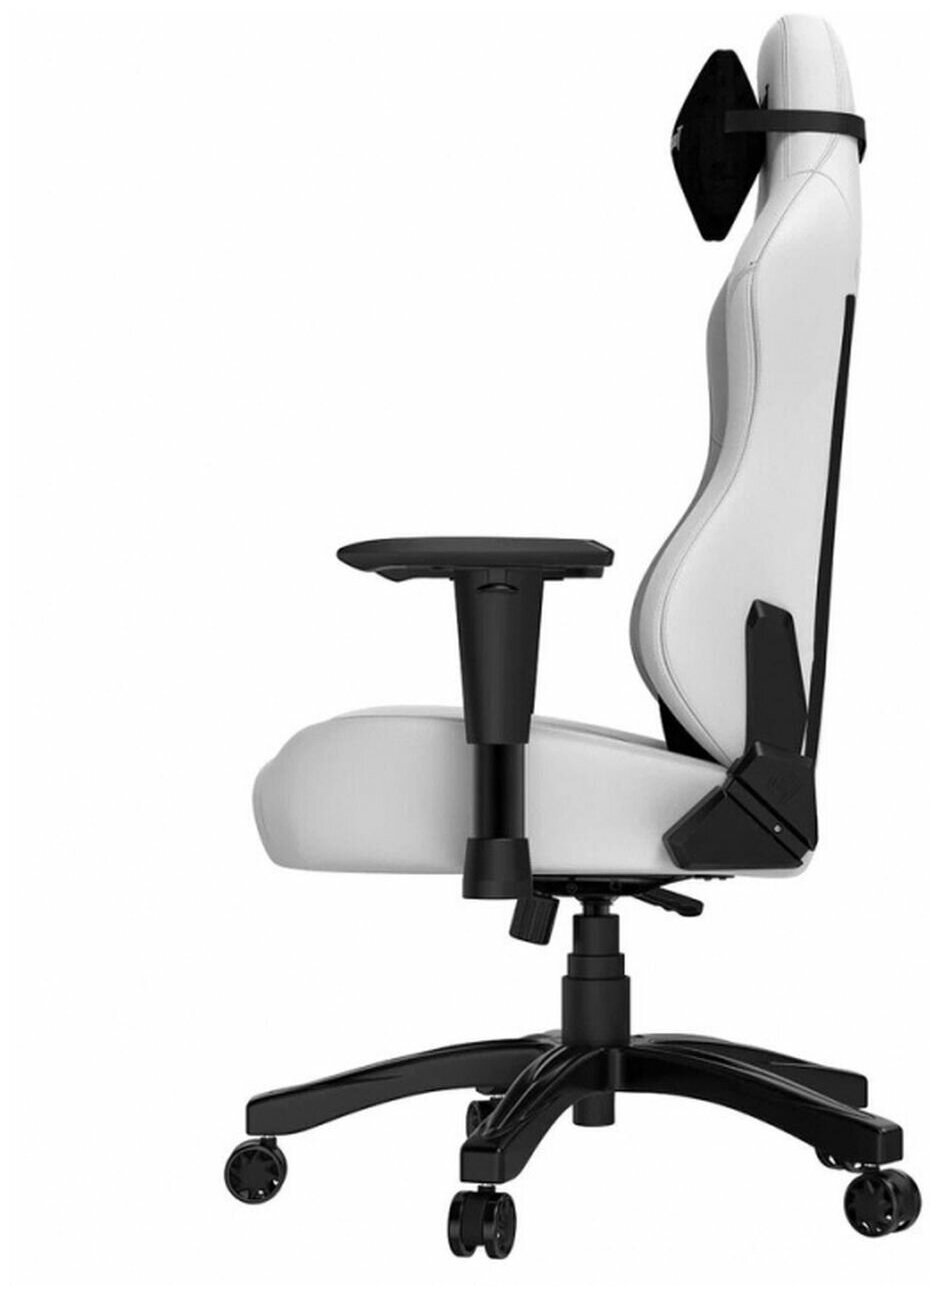 Компьютерное кресло Anda Seat Phantom 3 L игровое, обивка: искусственная кожа, былое (cloudy white) - фотография № 6